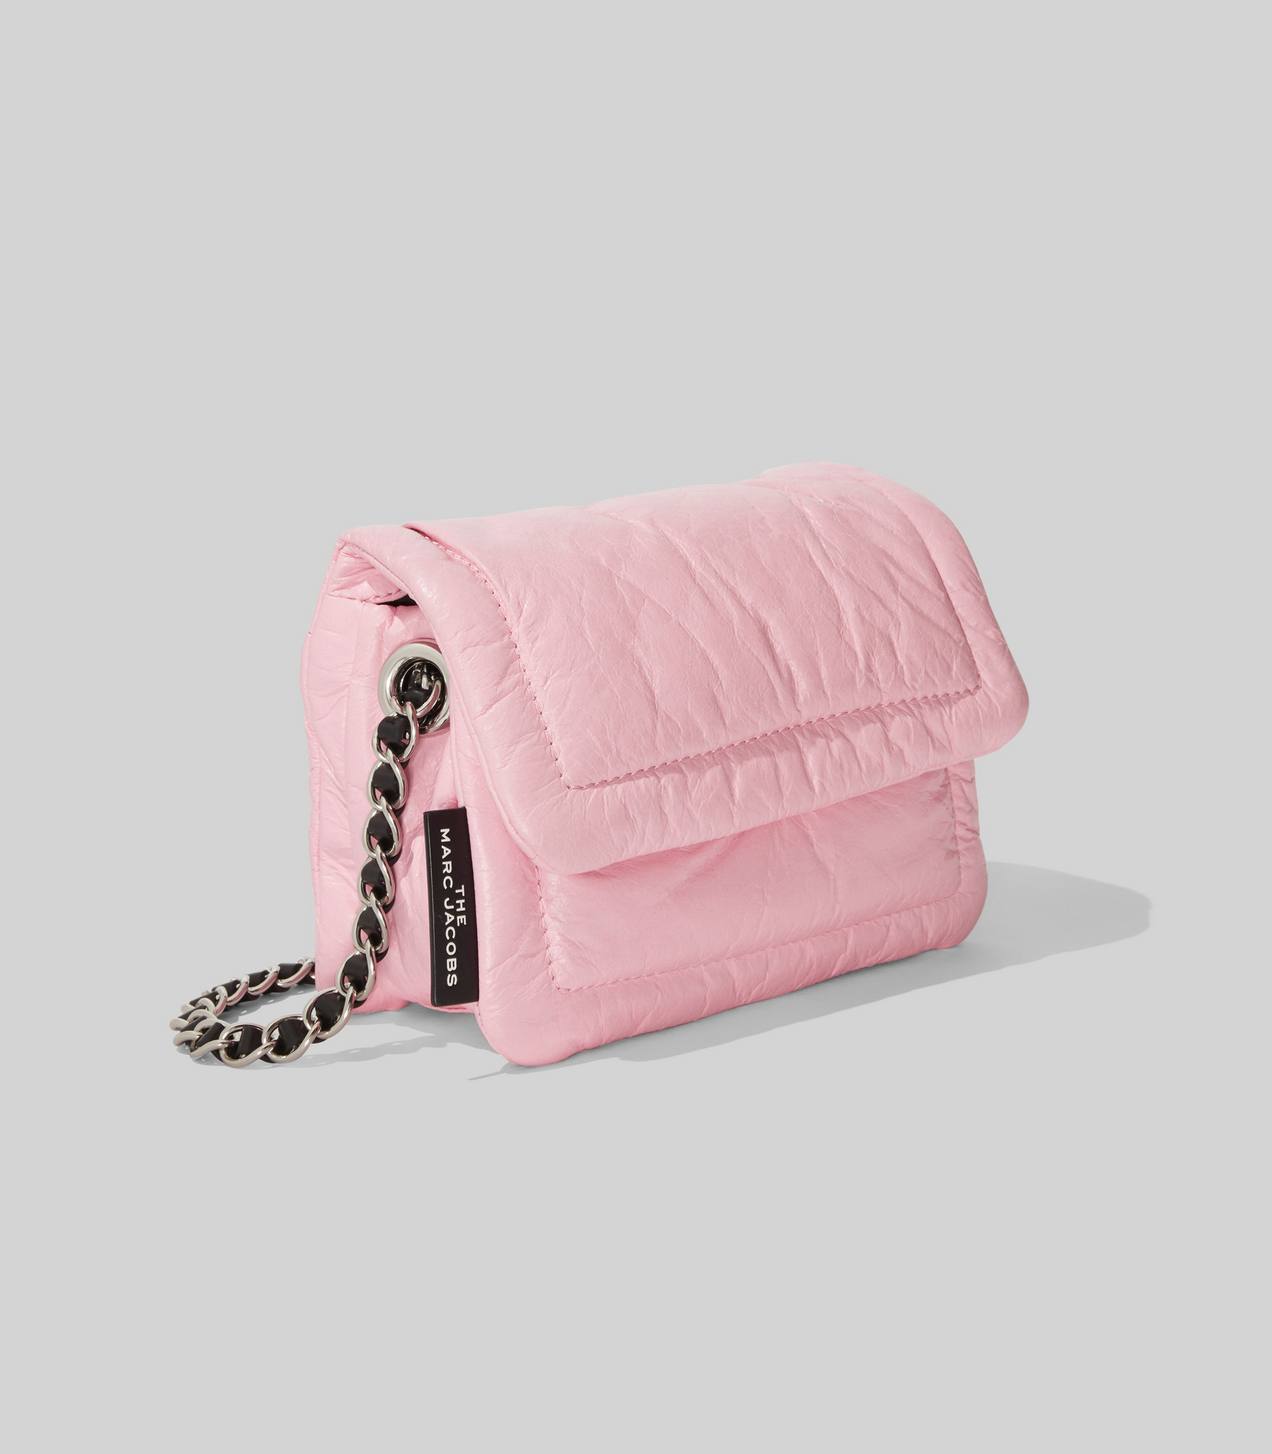 The Mini Pillow Bag